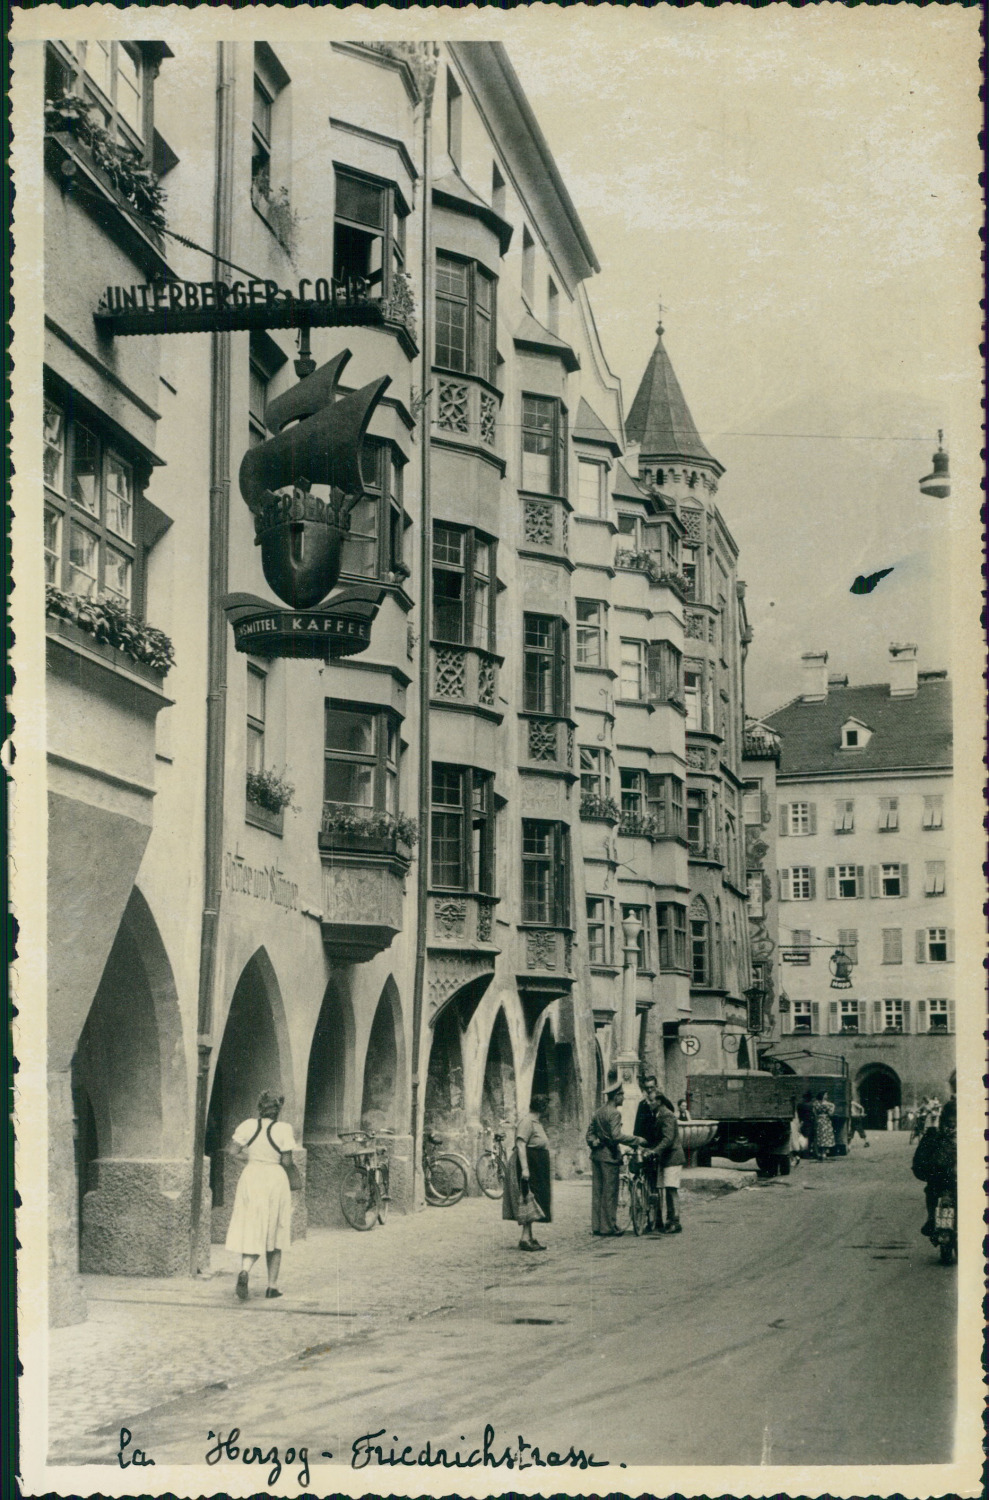 Austria, Innsbruck, Herzog-Friedrich-Strasse and its arcades, 1949, vintage silv